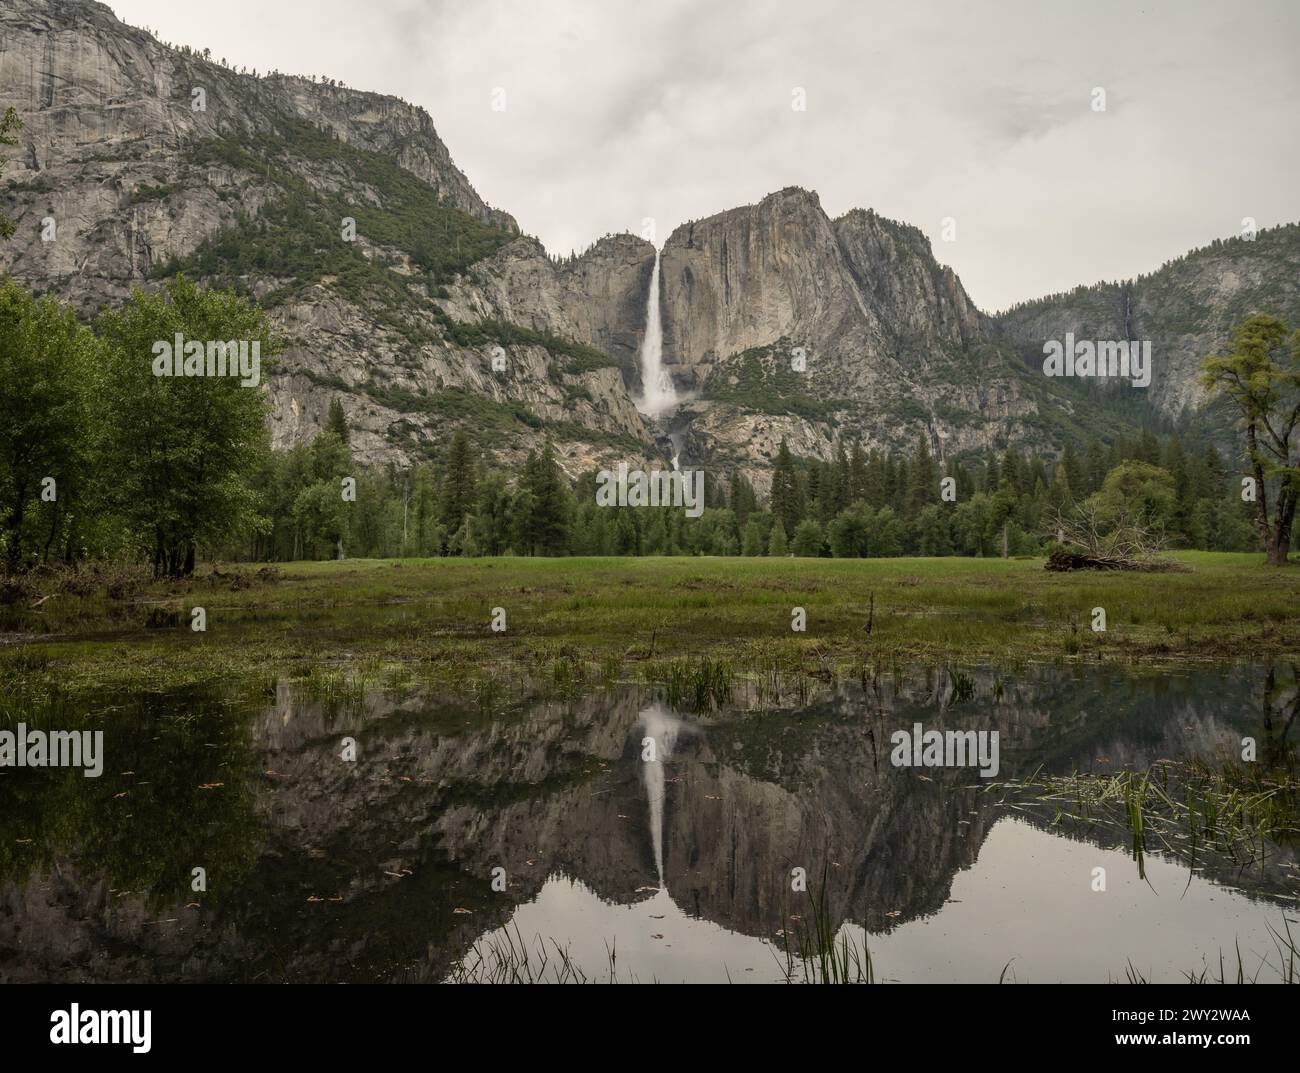 La caída de Yosemite se refleja en las aguas tranquilas que inundan el valle durante un año de nieve alta Foto de stock